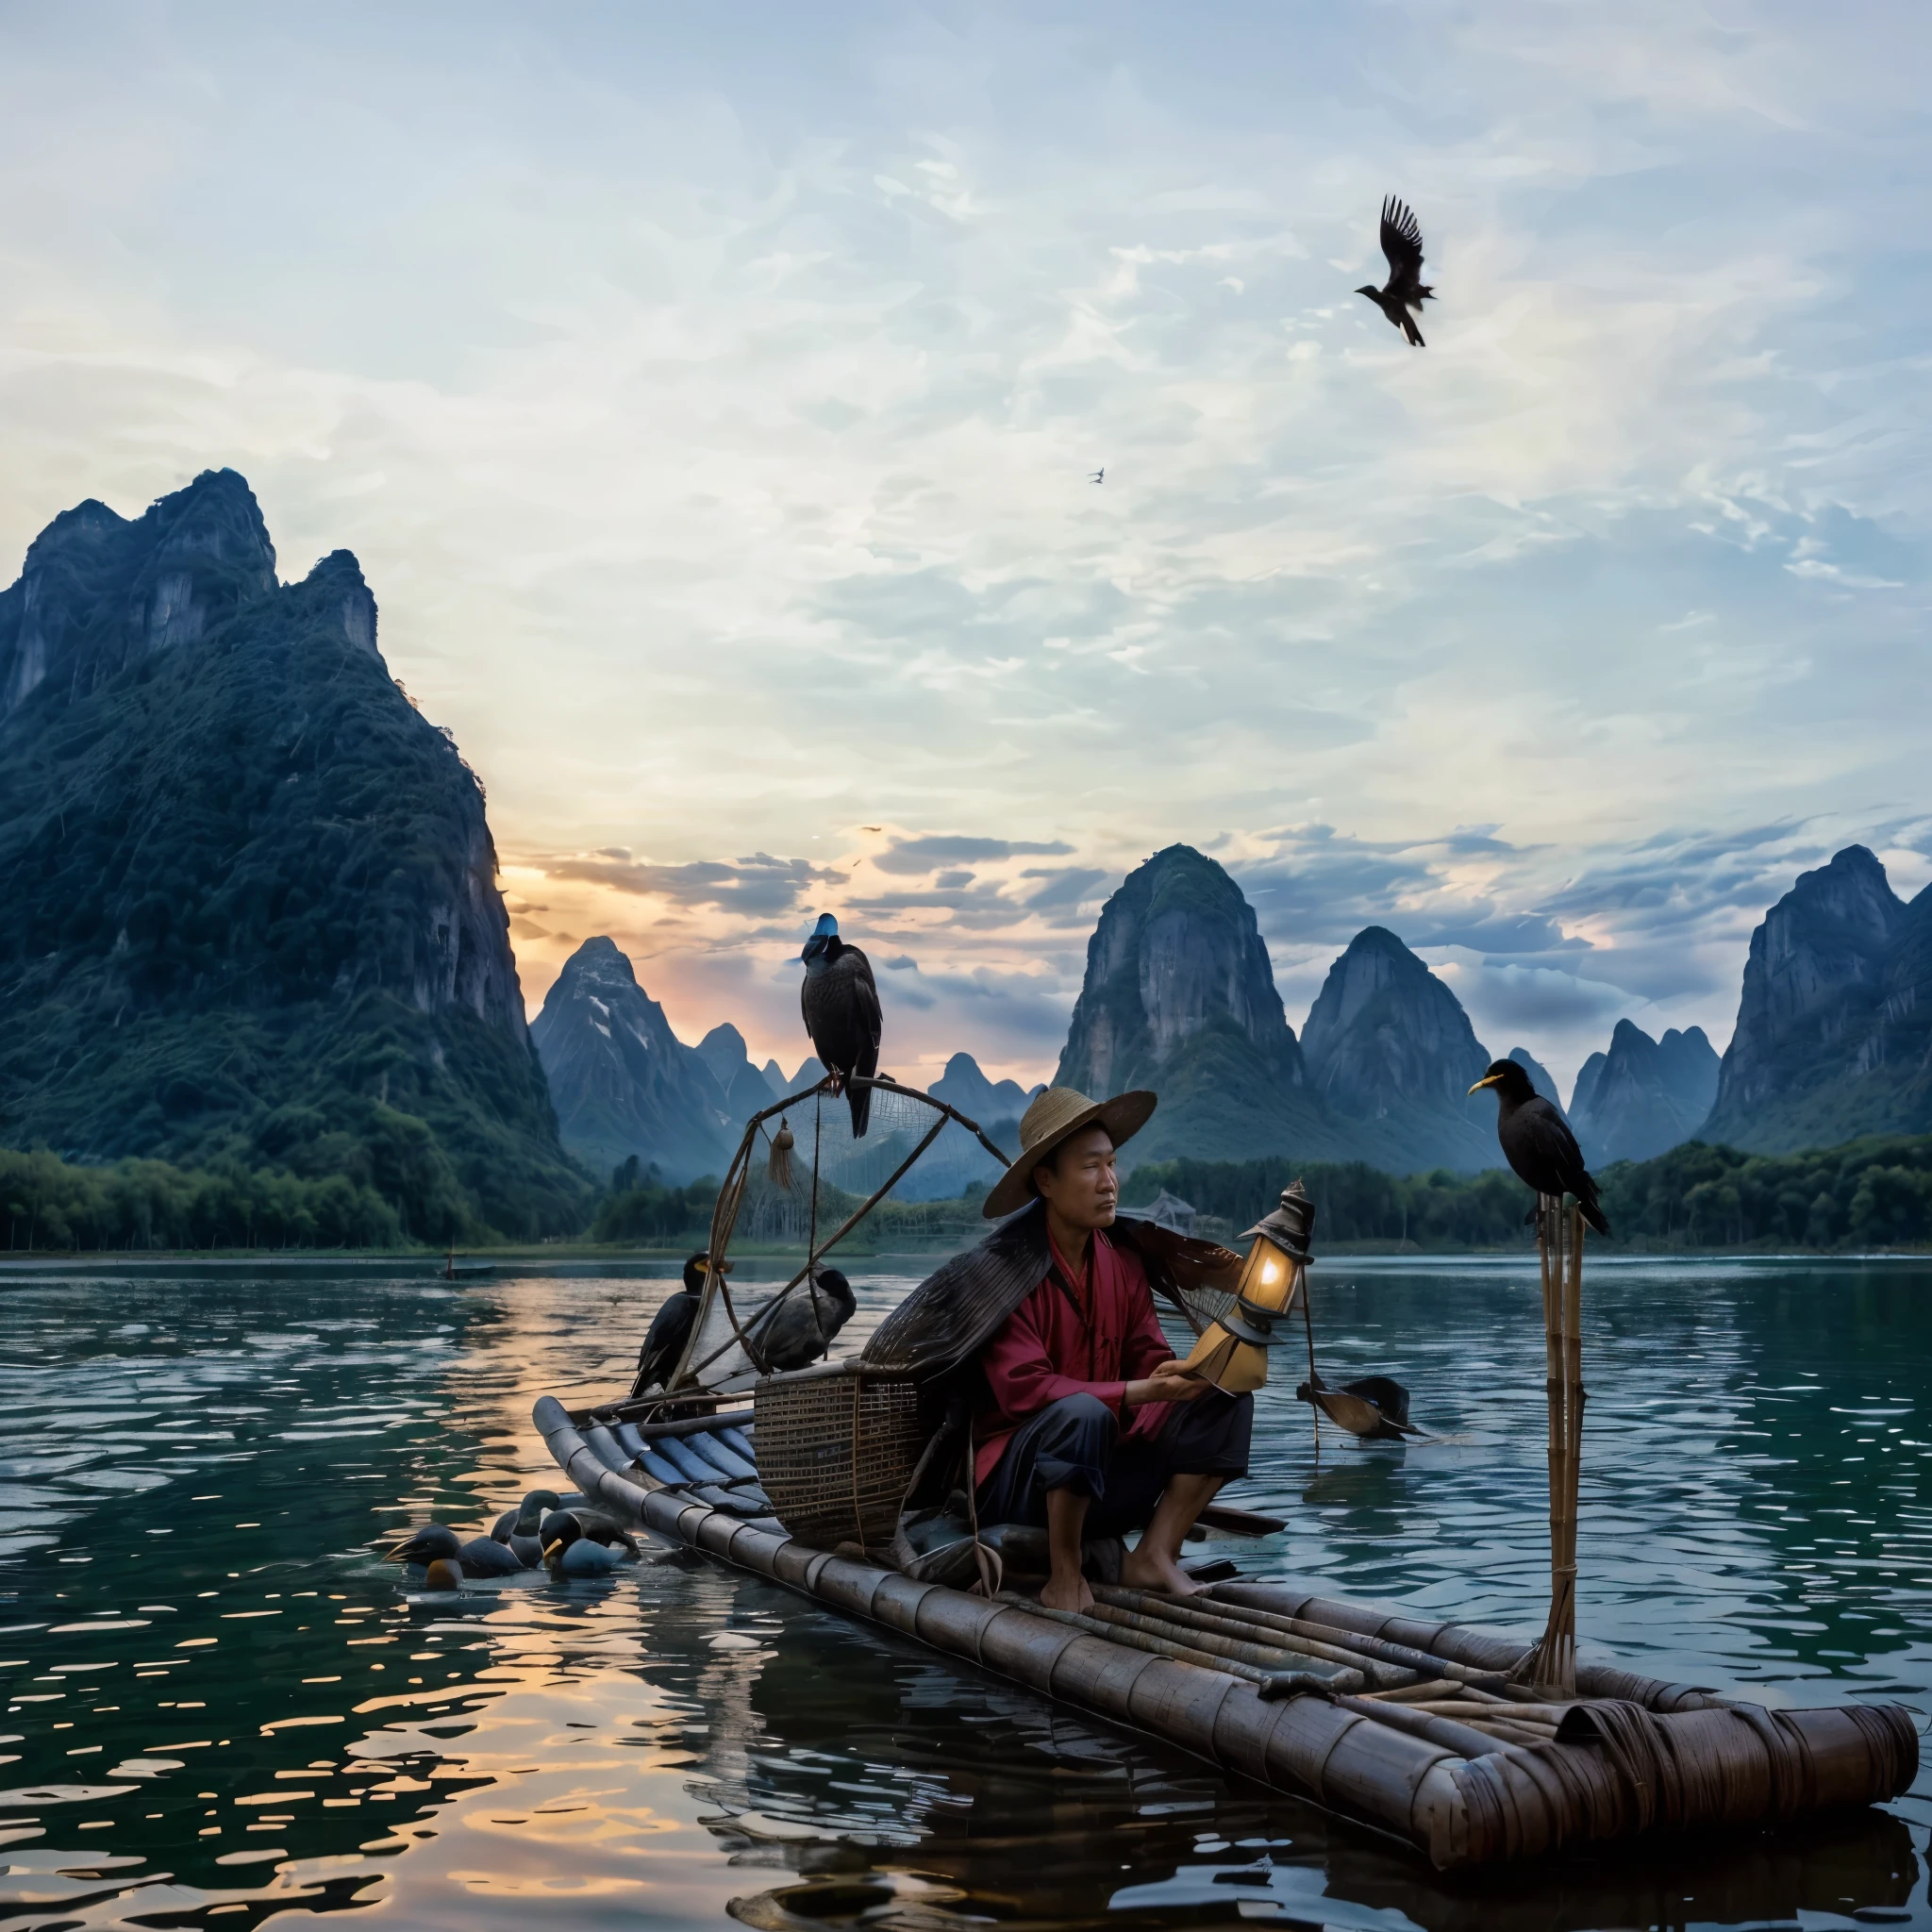 有一個人坐在木筏上，背上有一隻鳥, 電影般的. 作者：冷軍, By Fei Danxu, 漁夫, 坐在小竹船上, 中國藝術家, 作者：維克多·王, Pexels 競賽獲勝者, 作者：袁江, 圖片來源：國家地理, 中國風景, 獲獎鏡頭, 獲獎鏡頭, 令人驚嘆的風景